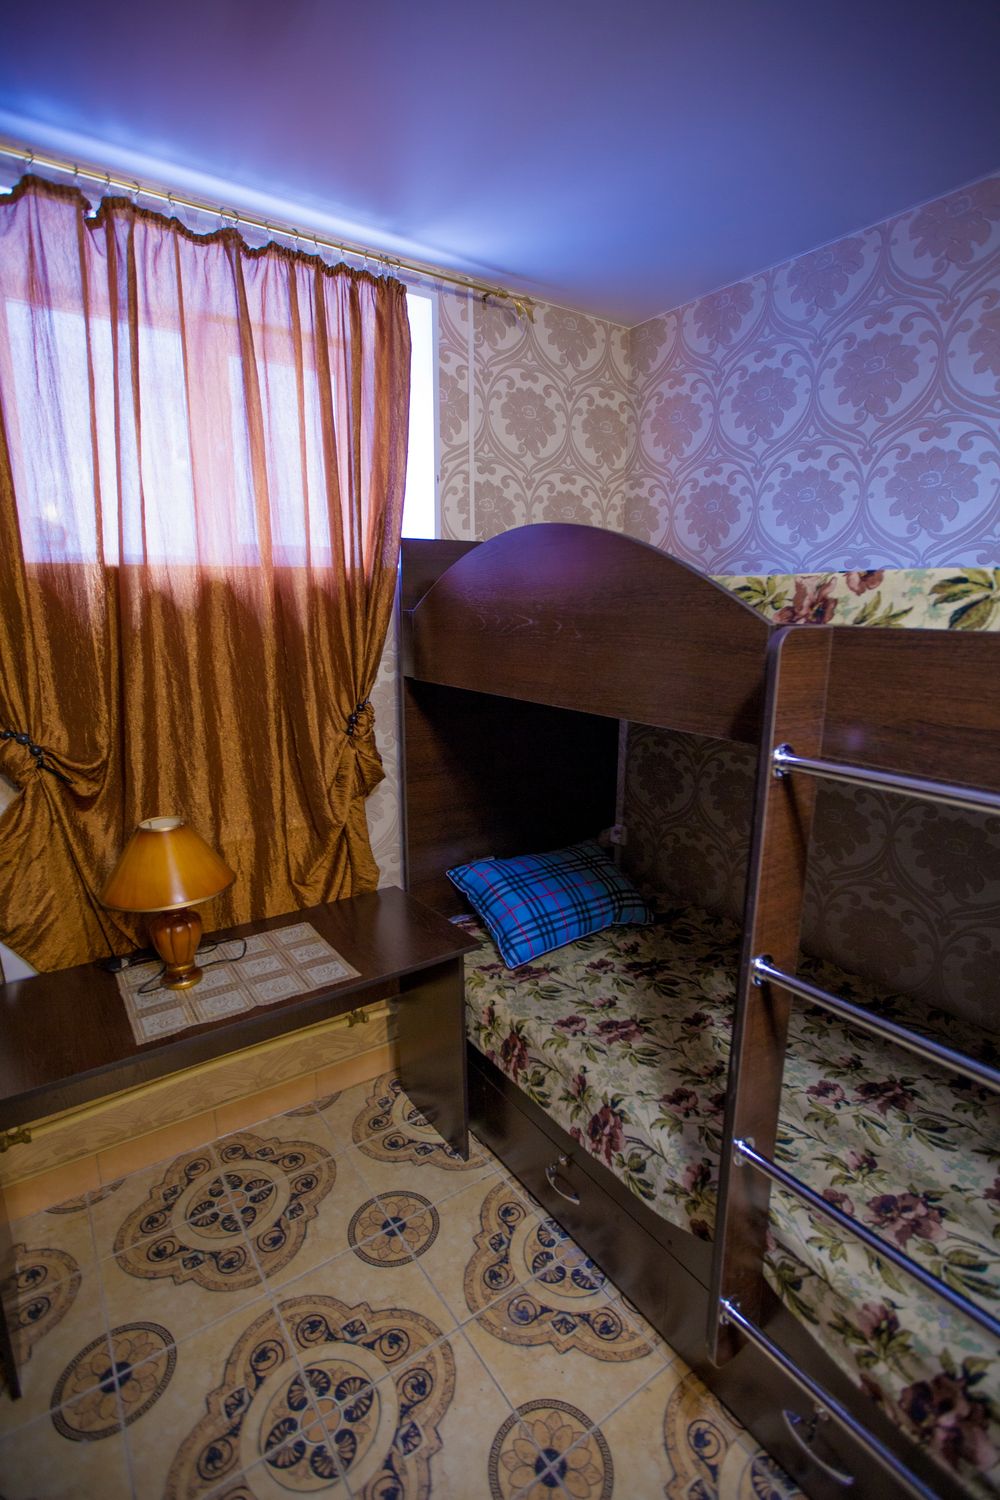 Хостелы Барнаула — как жить в современном общежитии?